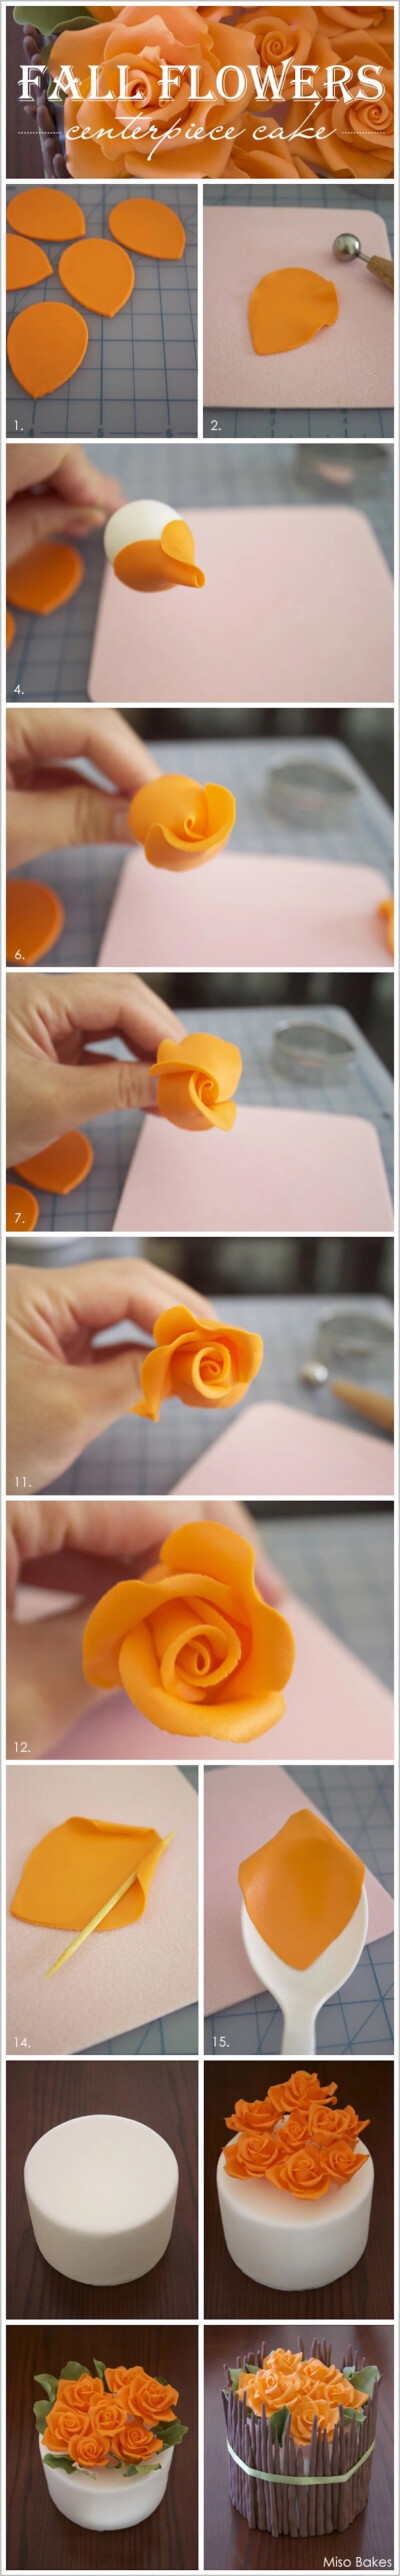 玫瑰花怎么做粘土图片